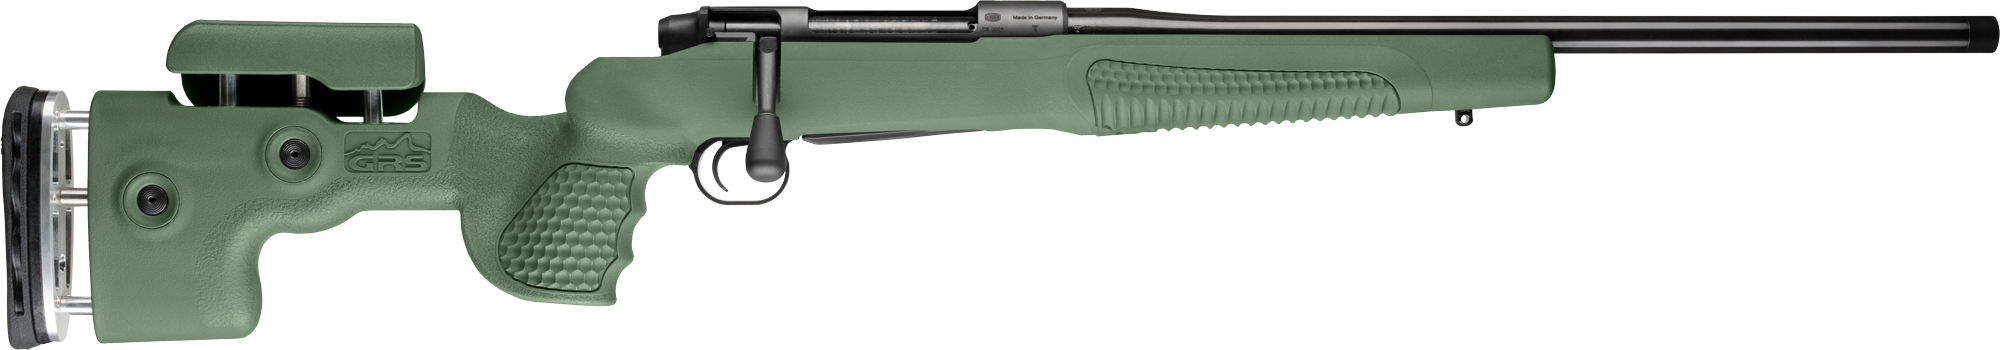 Mauser Schalldämpfer-Schutz L230 Oliv Neopren Schalldämpfer-Cover SD-Schutz  NEU